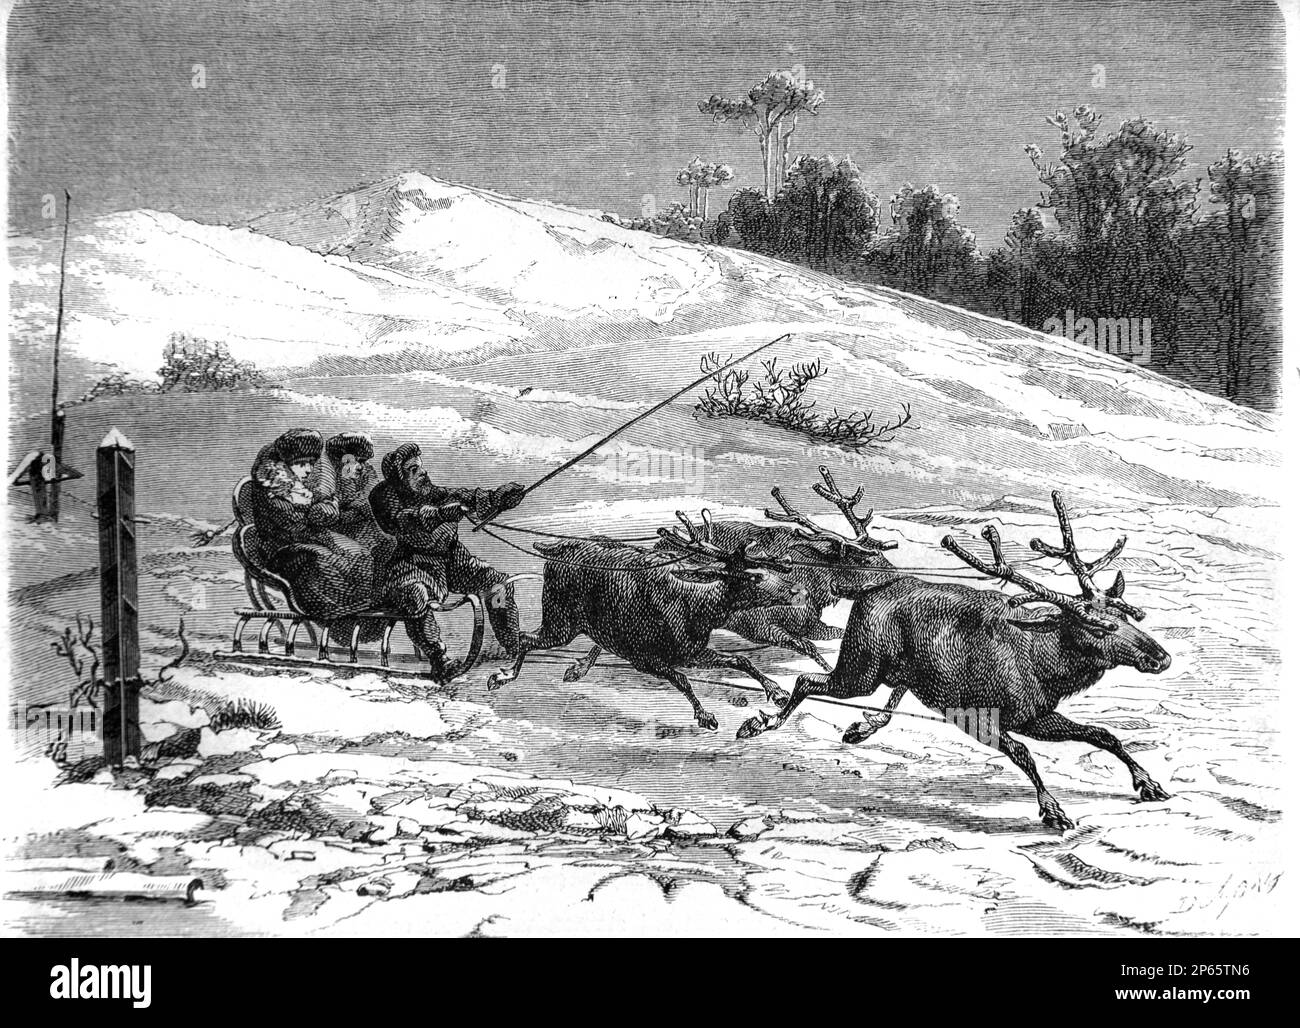 Traîneau à rennes en Sibérie Russie. Gravure ancienne ou illustration 1862 Banque D'Images